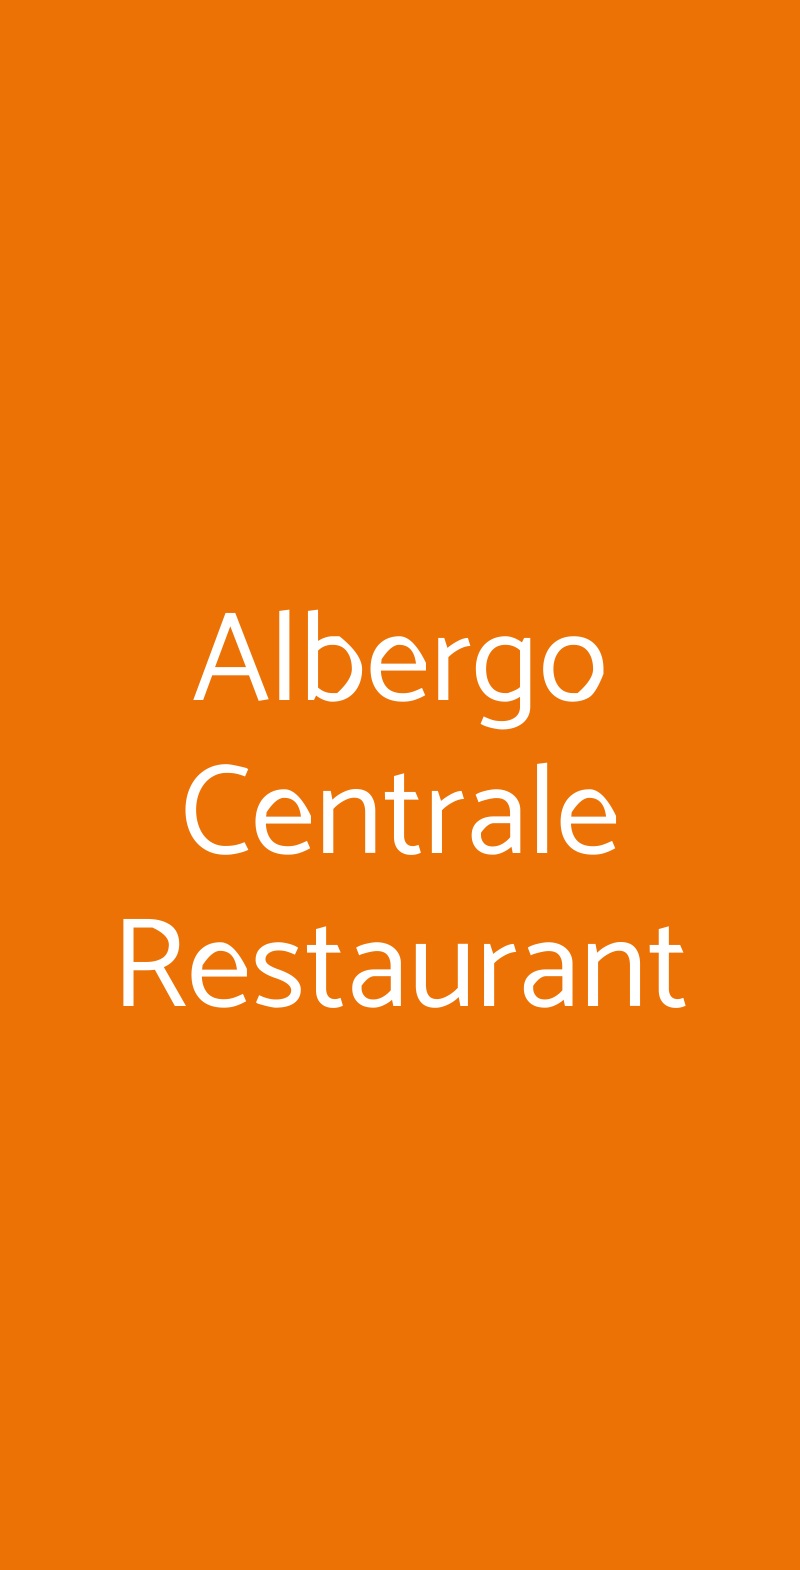 Albergo Centrale Restaurant Cernobbio menù 1 pagina